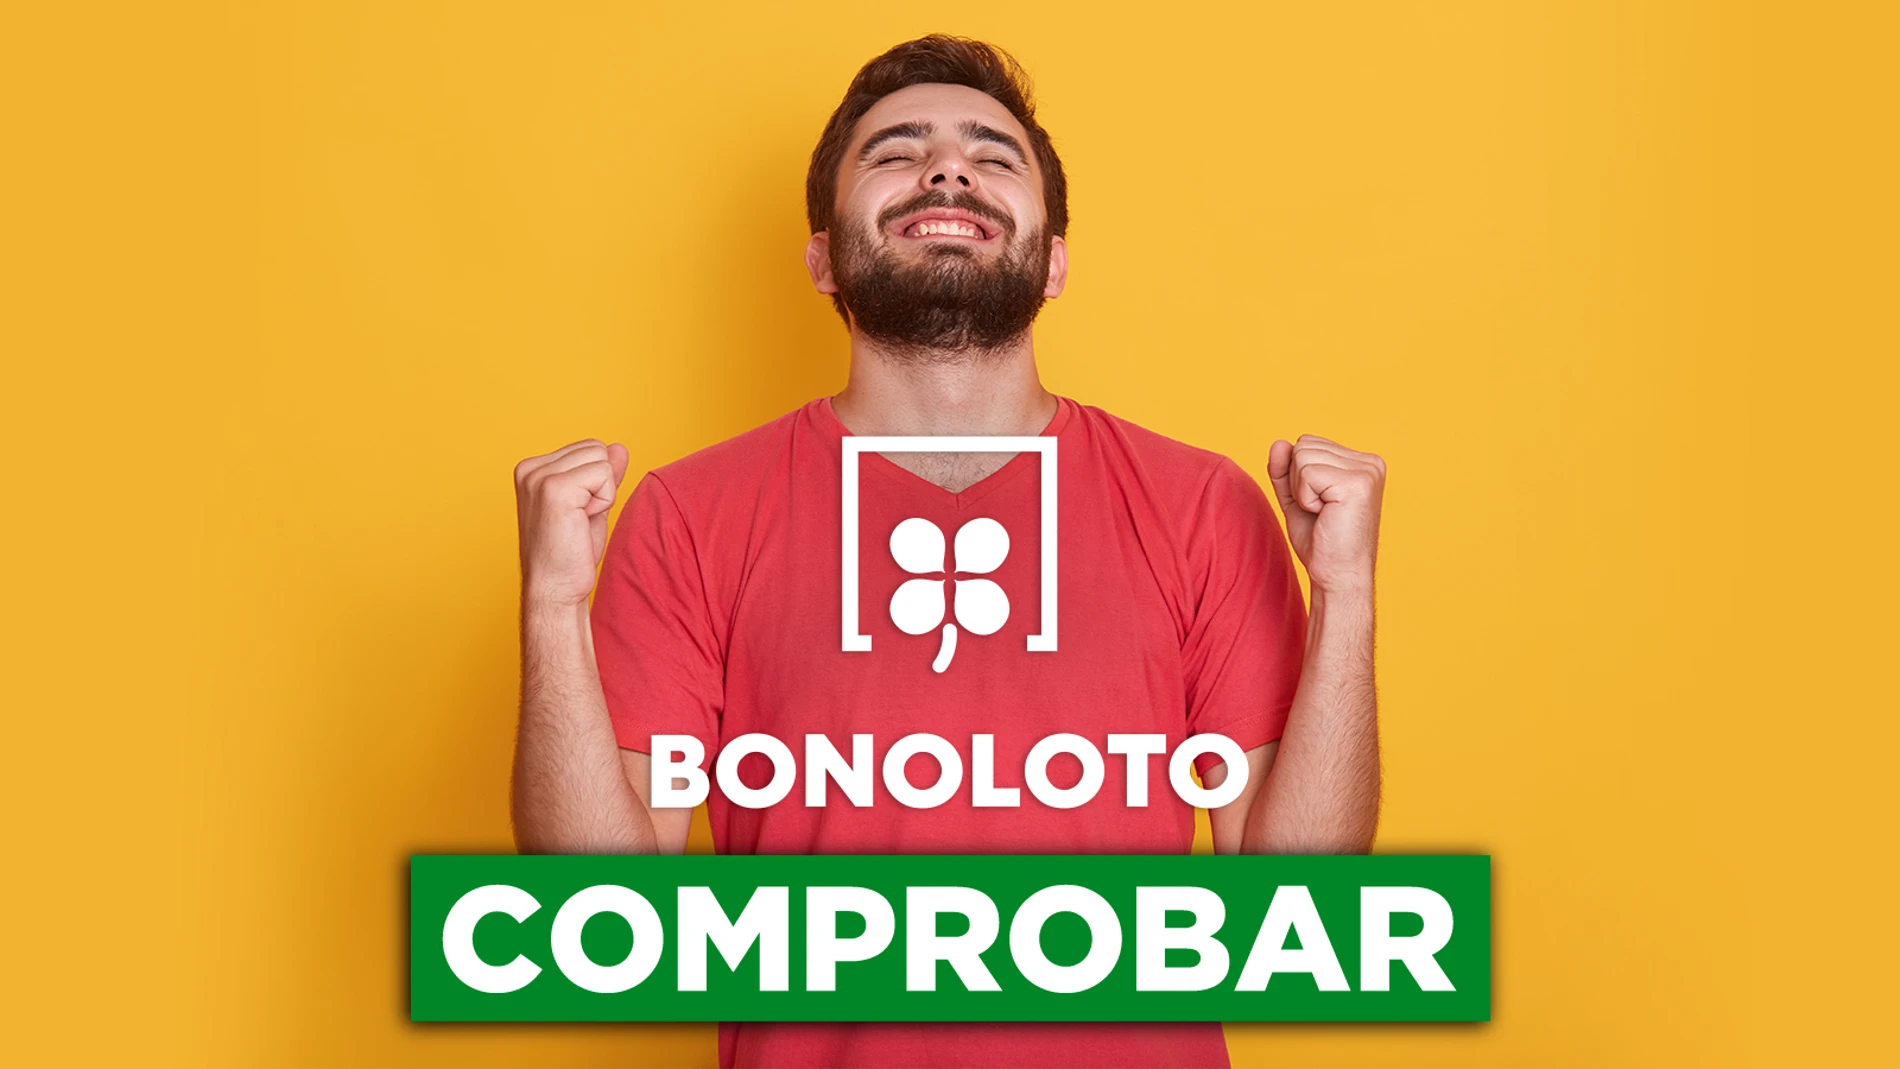 Bonoloto, sorteo de hoy: Comprobar miércoles 1 de junio de 2022